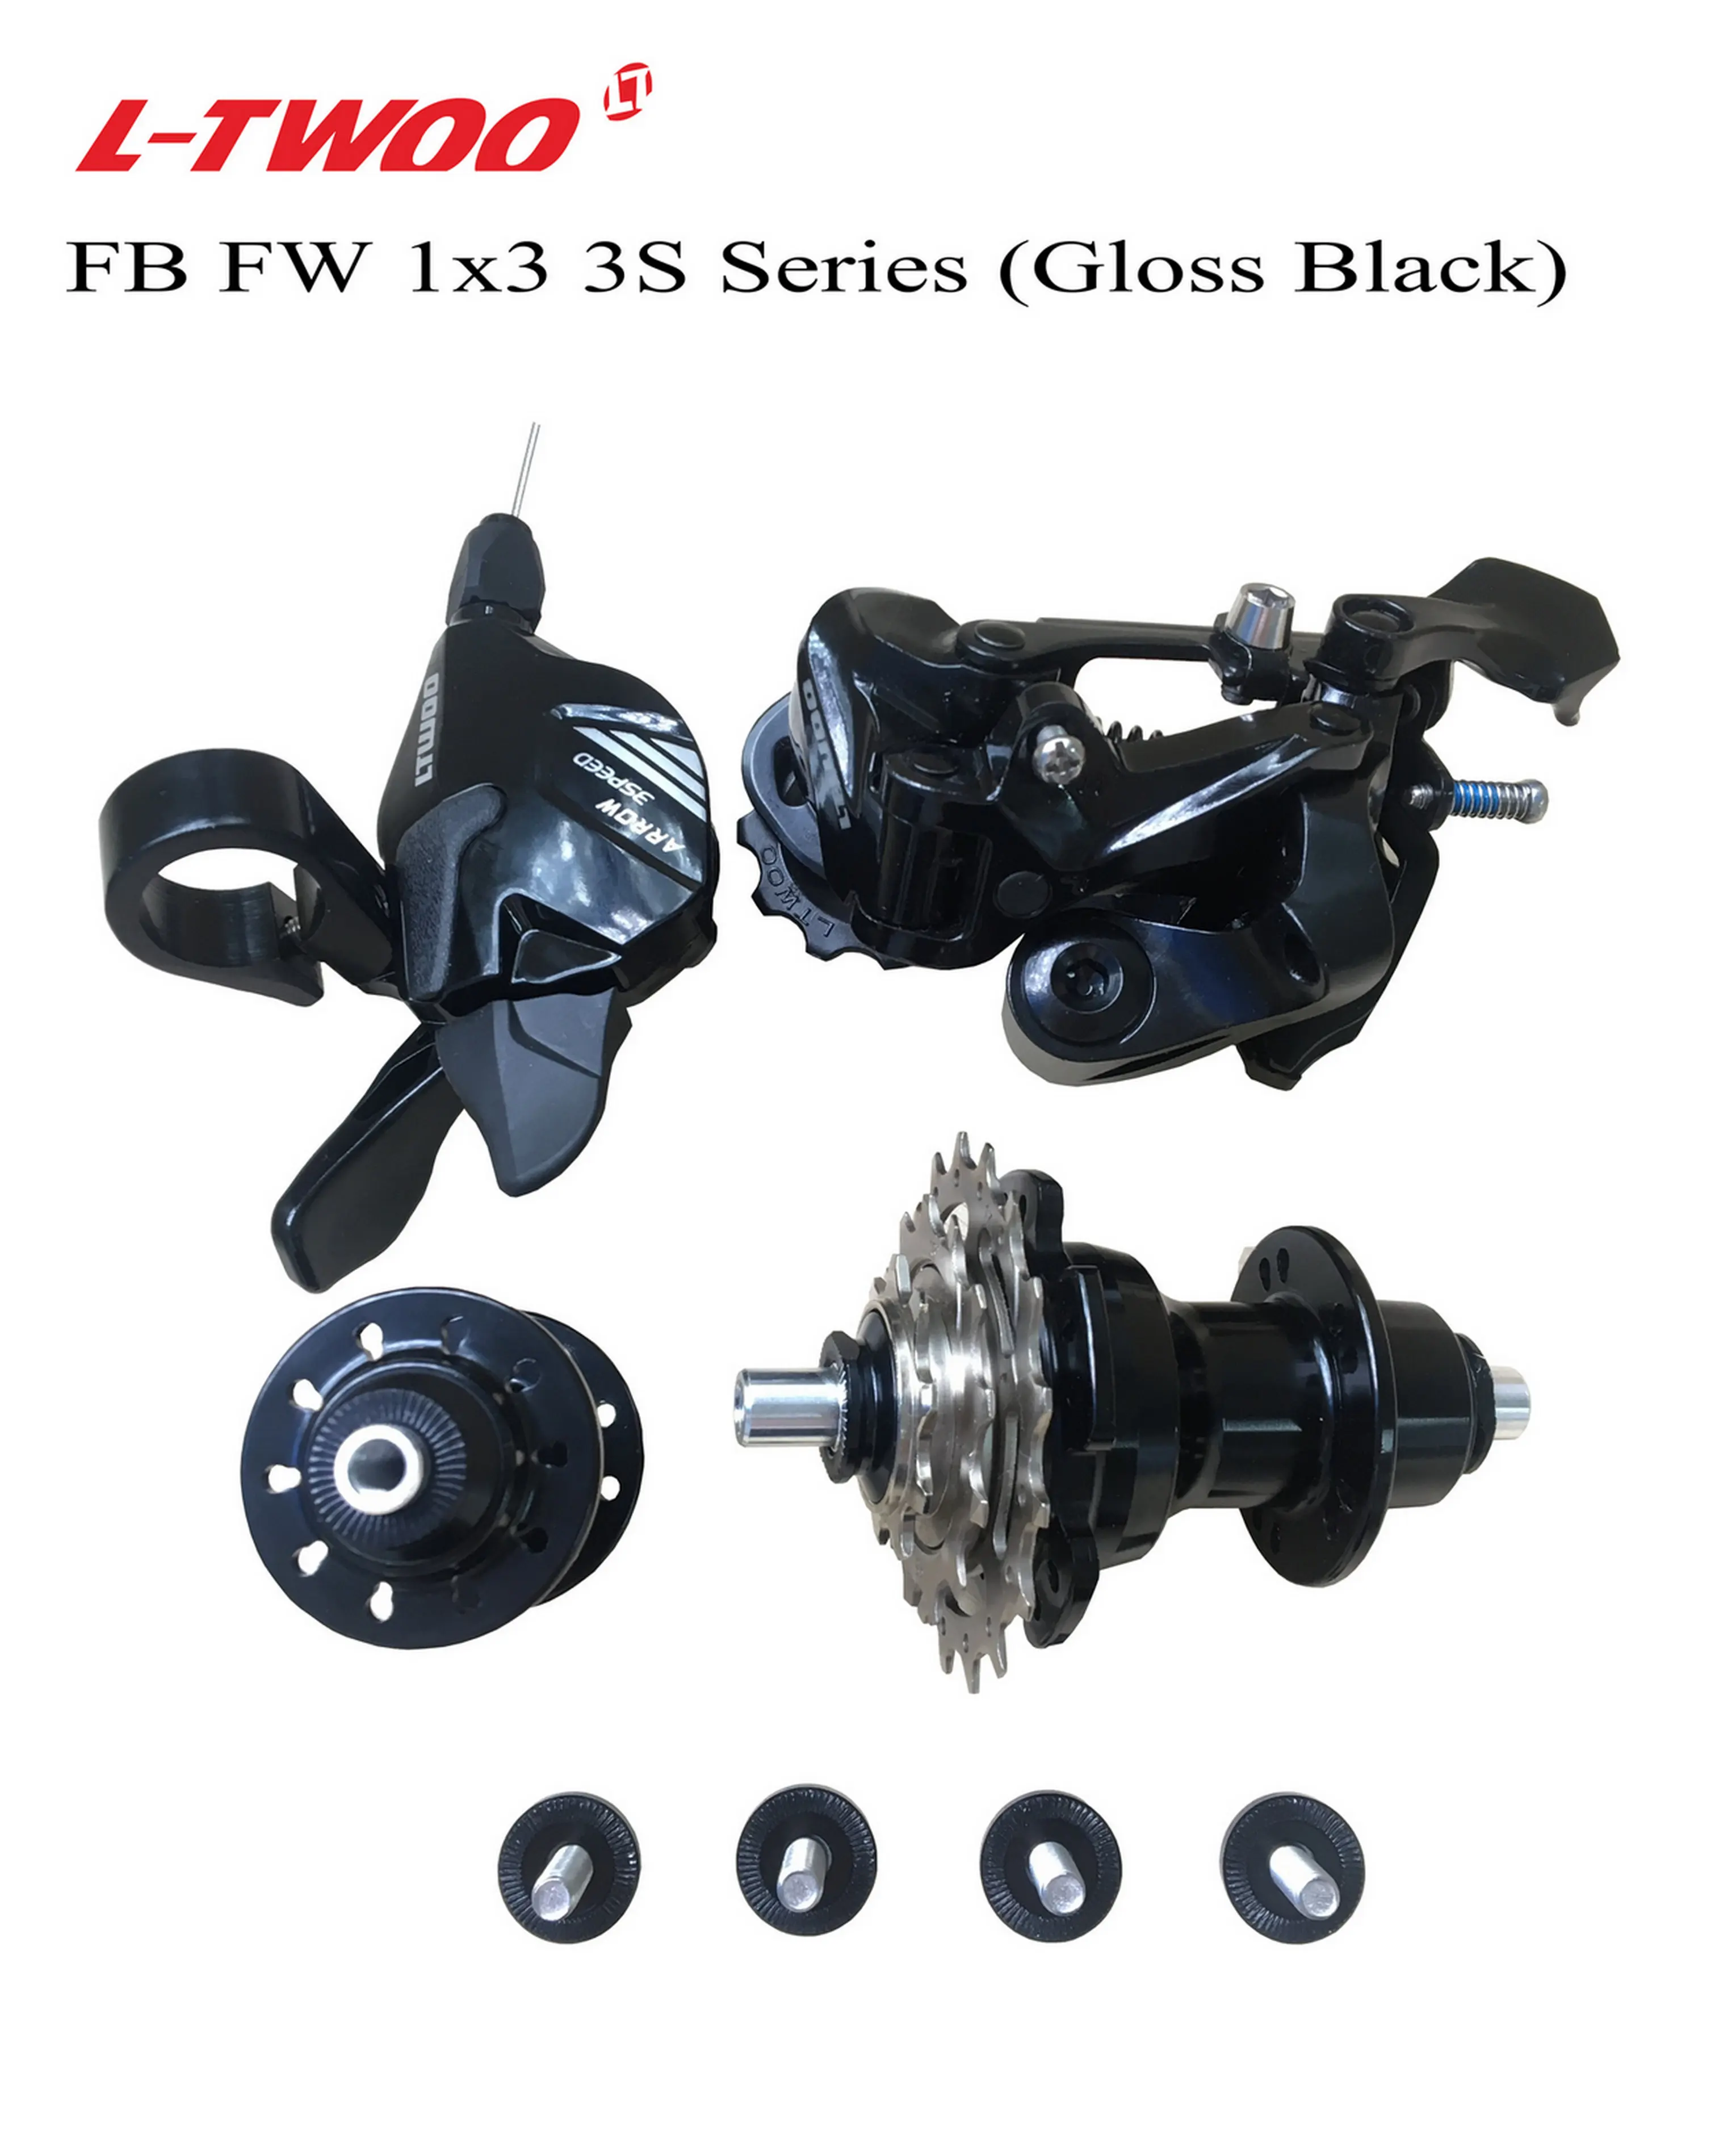 LTWOO складной велосипед задний переключатель указано, переключения/RD/F& R концентратор/уп 3 шт в комплекте, цвета: черный и серый цвет, светильник вес, быстрая замена